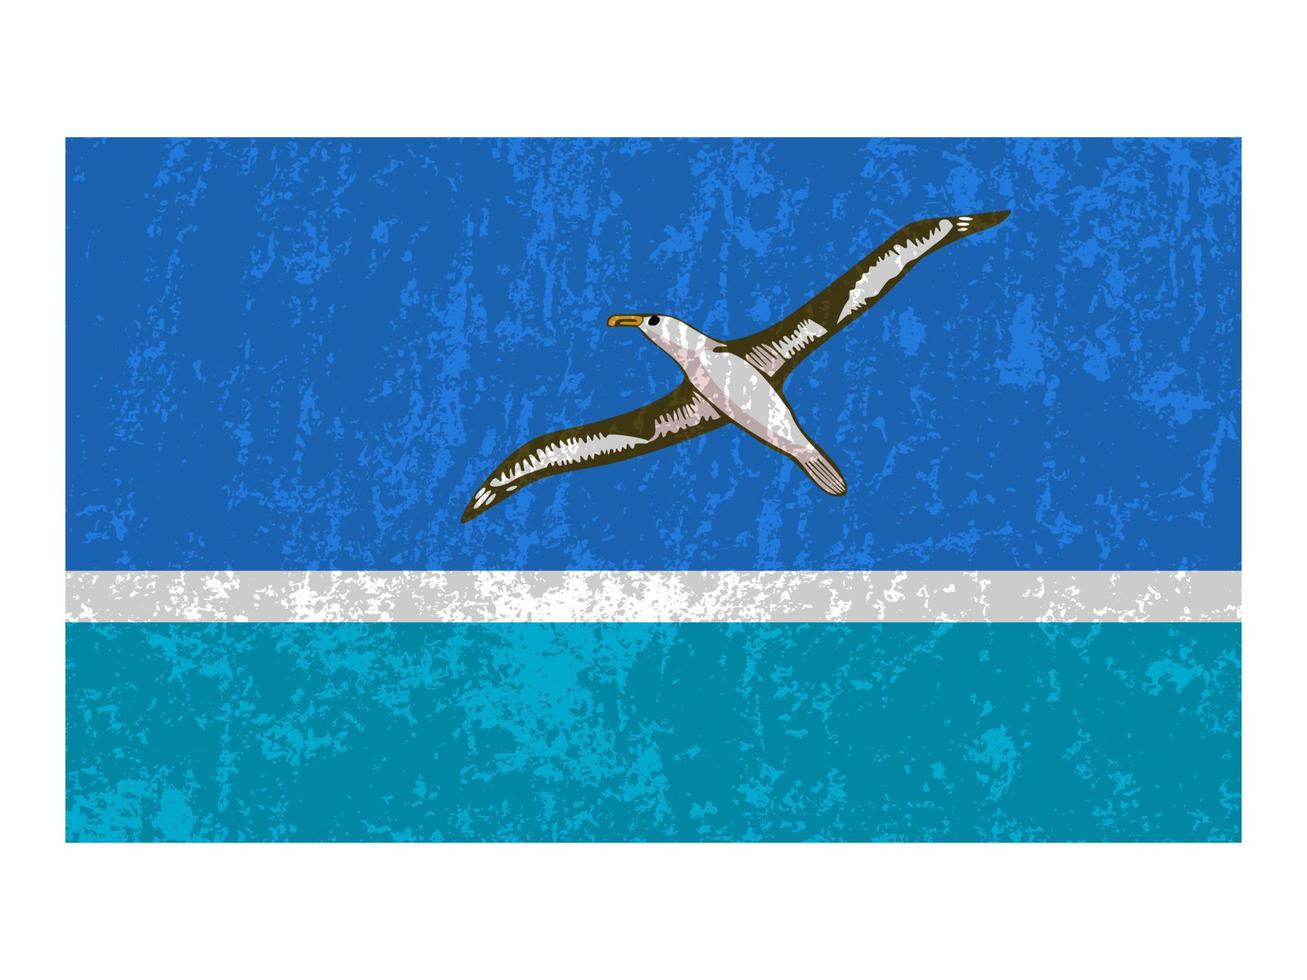 Midway-Atoll-Grunge-Flagge, offizielle Farben und Proportionen. Vektor-Illustration. vektor